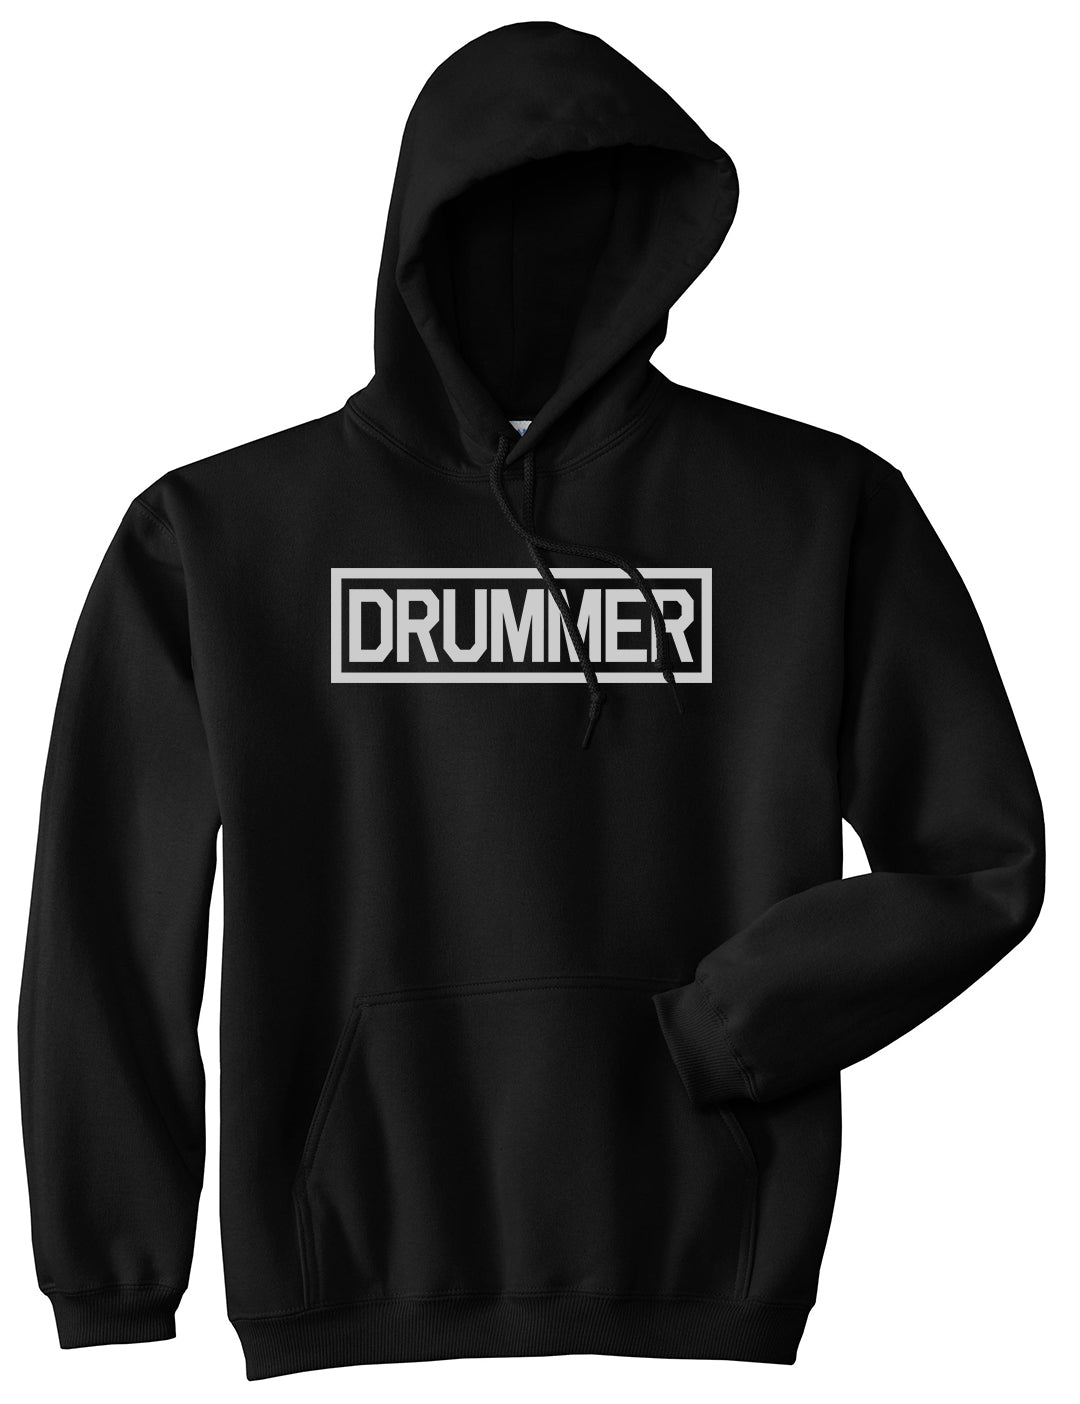 Drummer Drum Box Mens Black Pullover Hoodie by Kings Of NY